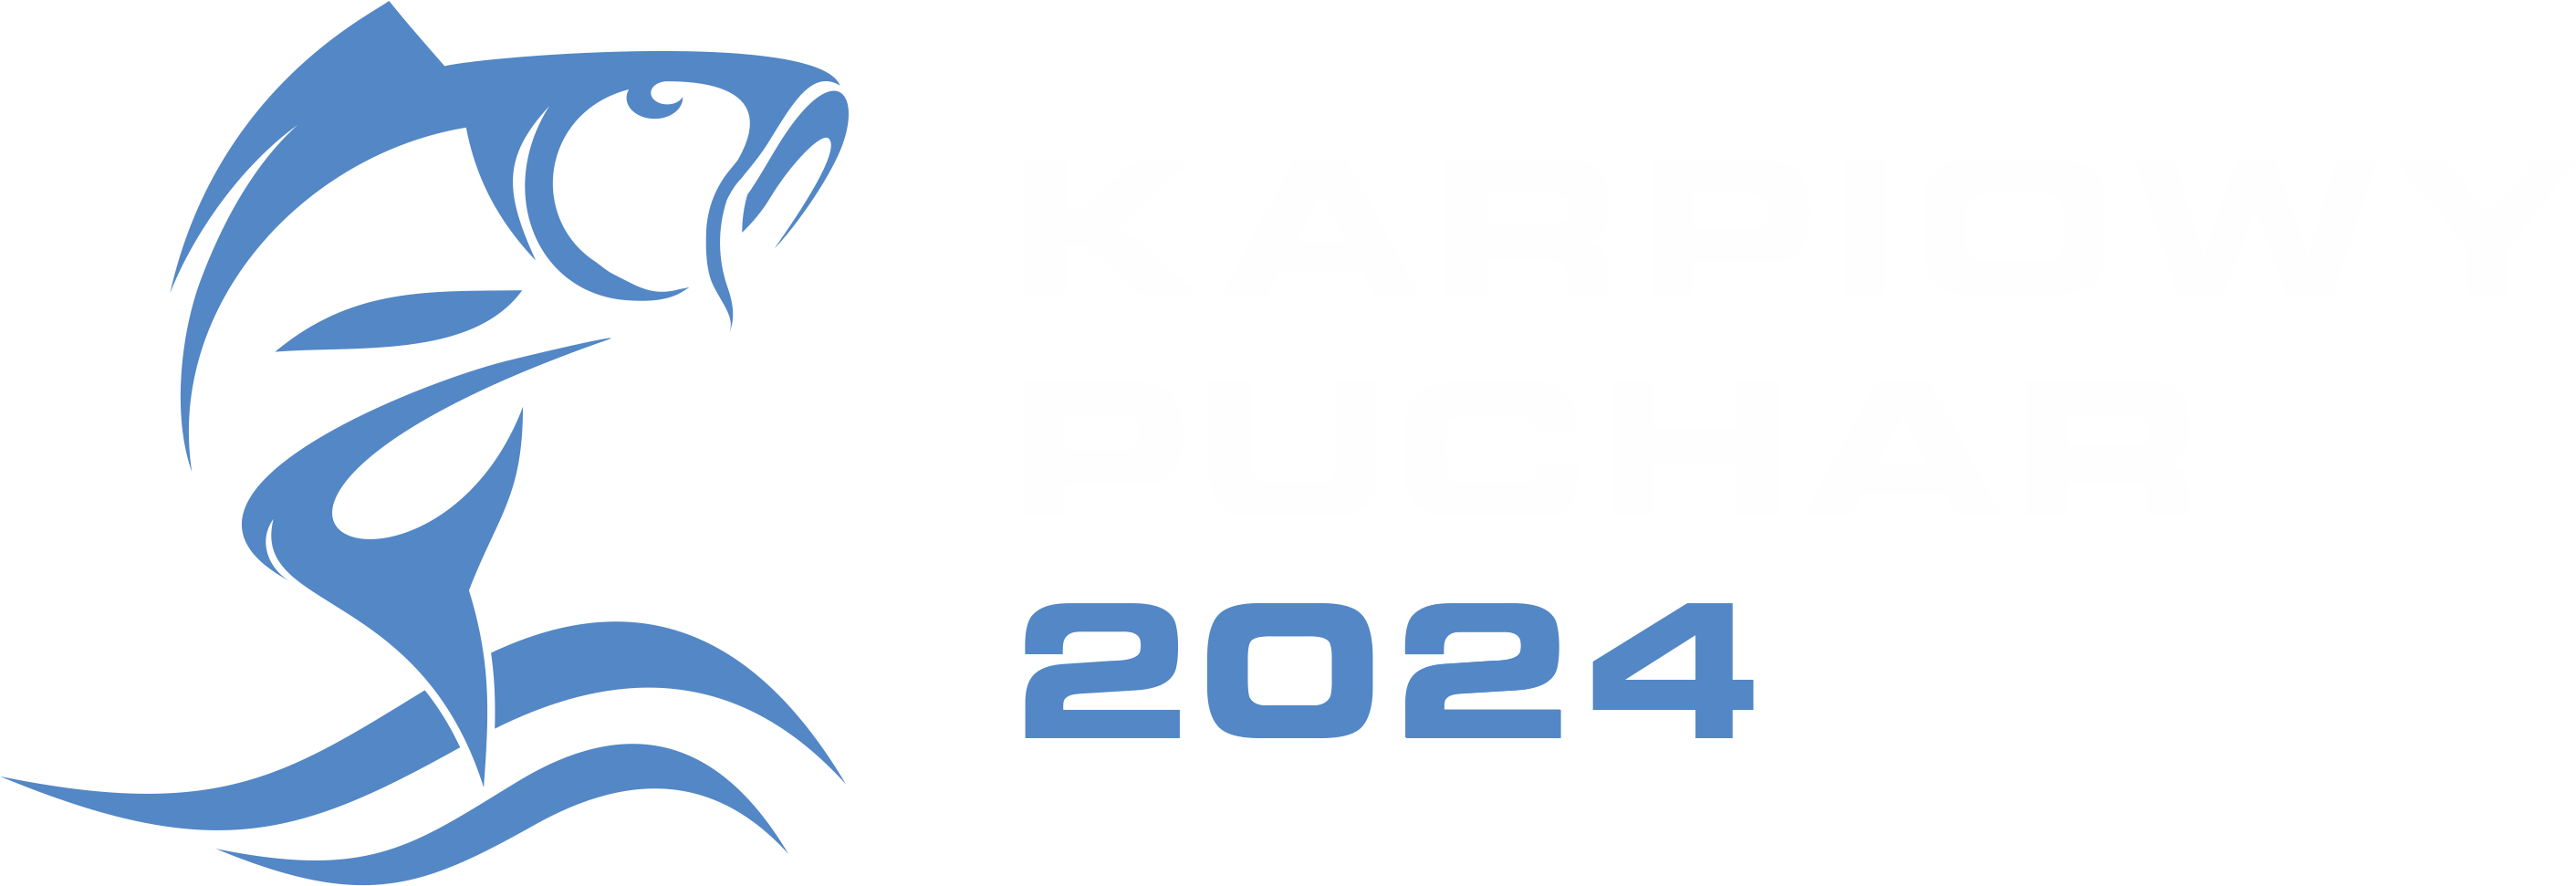 Karpiowy Puchar 2024